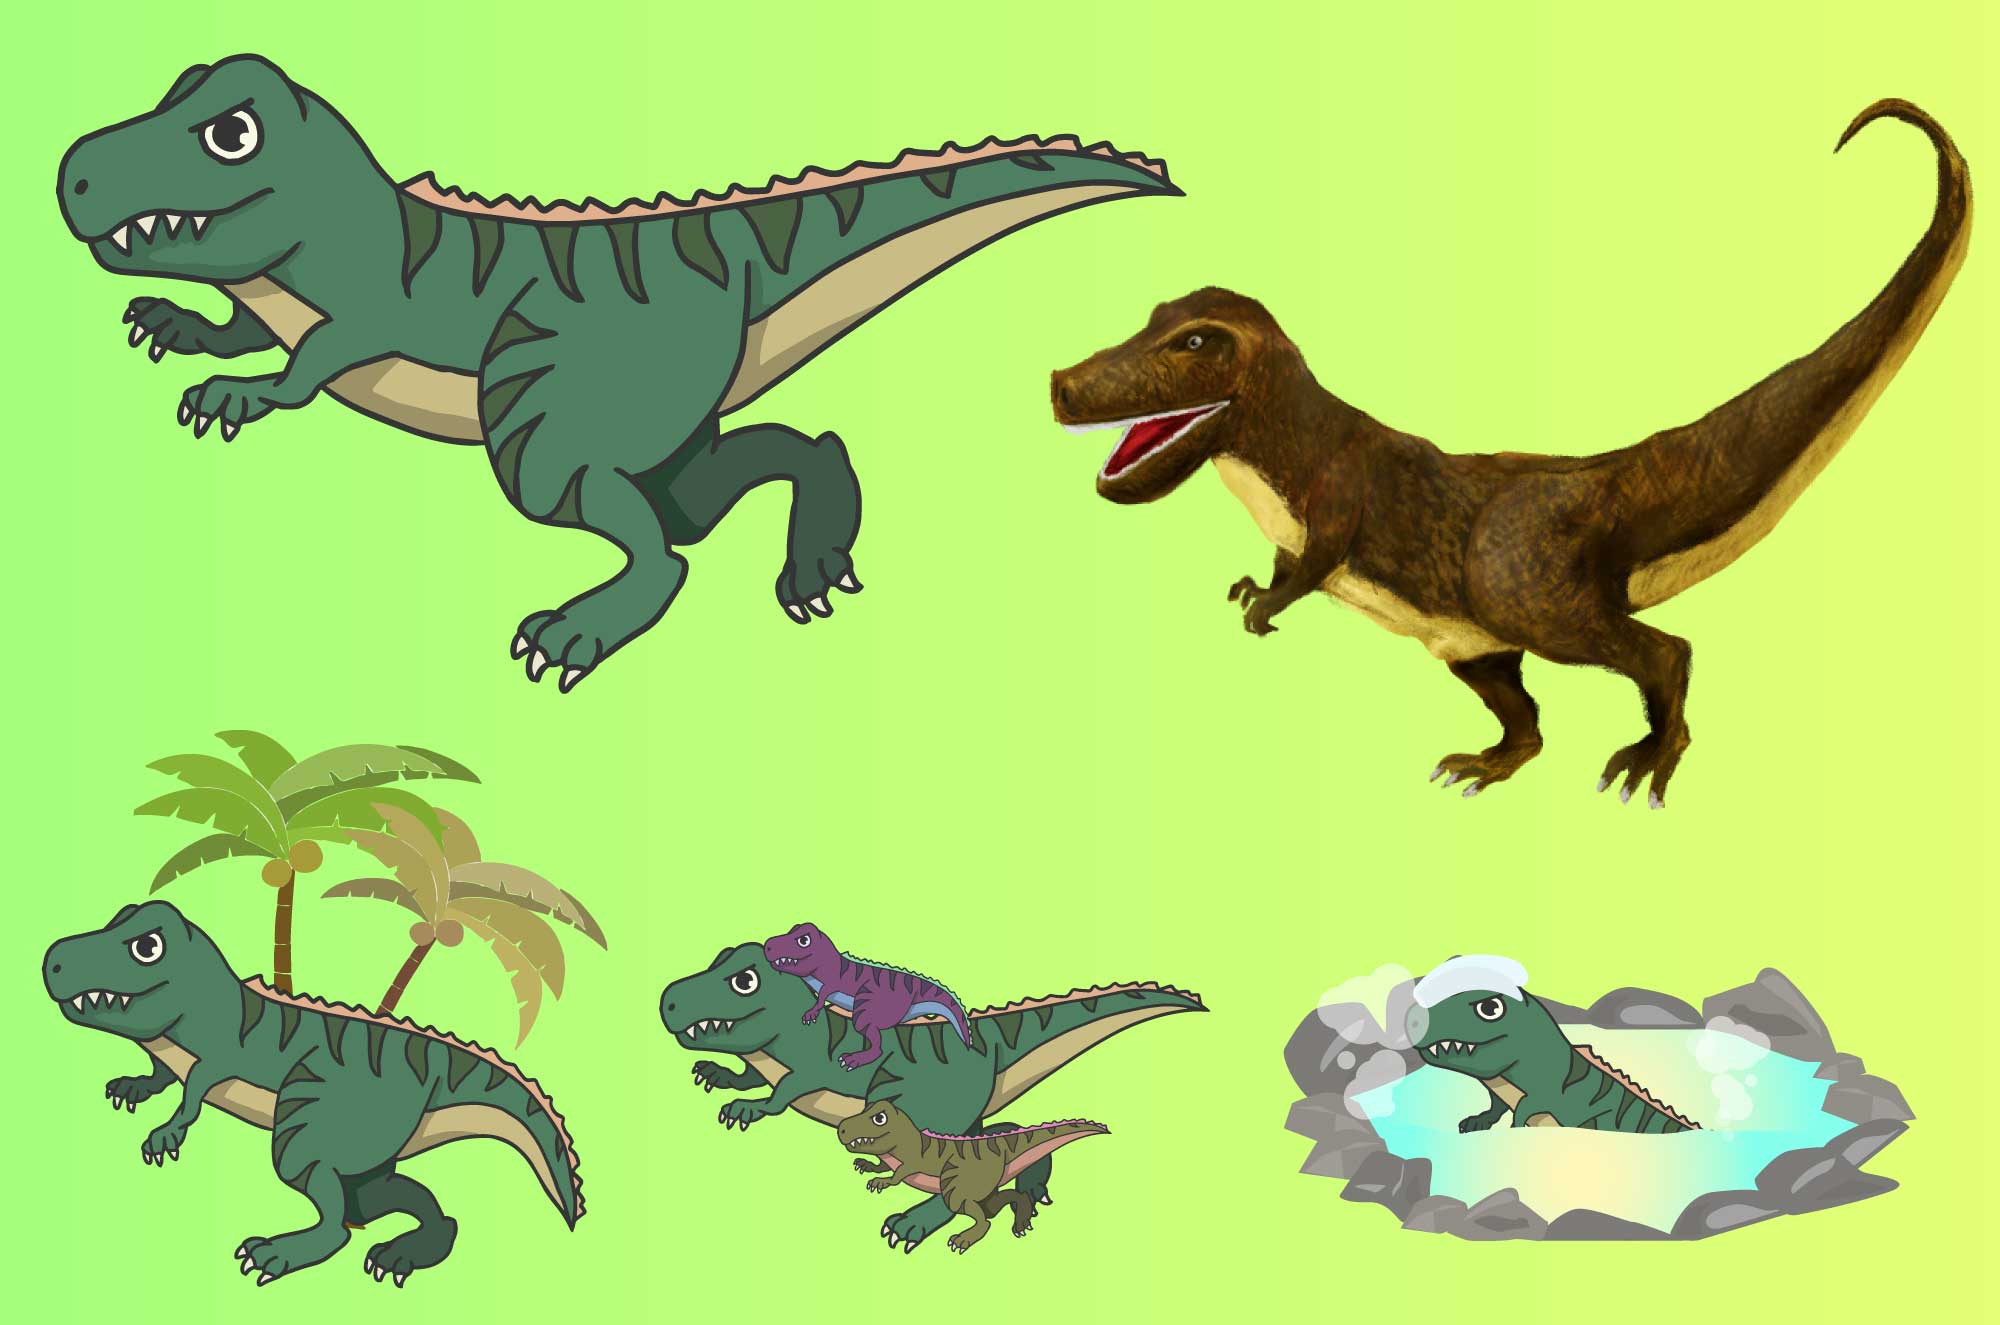 ティラノサウルスのイラスト - かっこいい・かわいい肉食恐竜